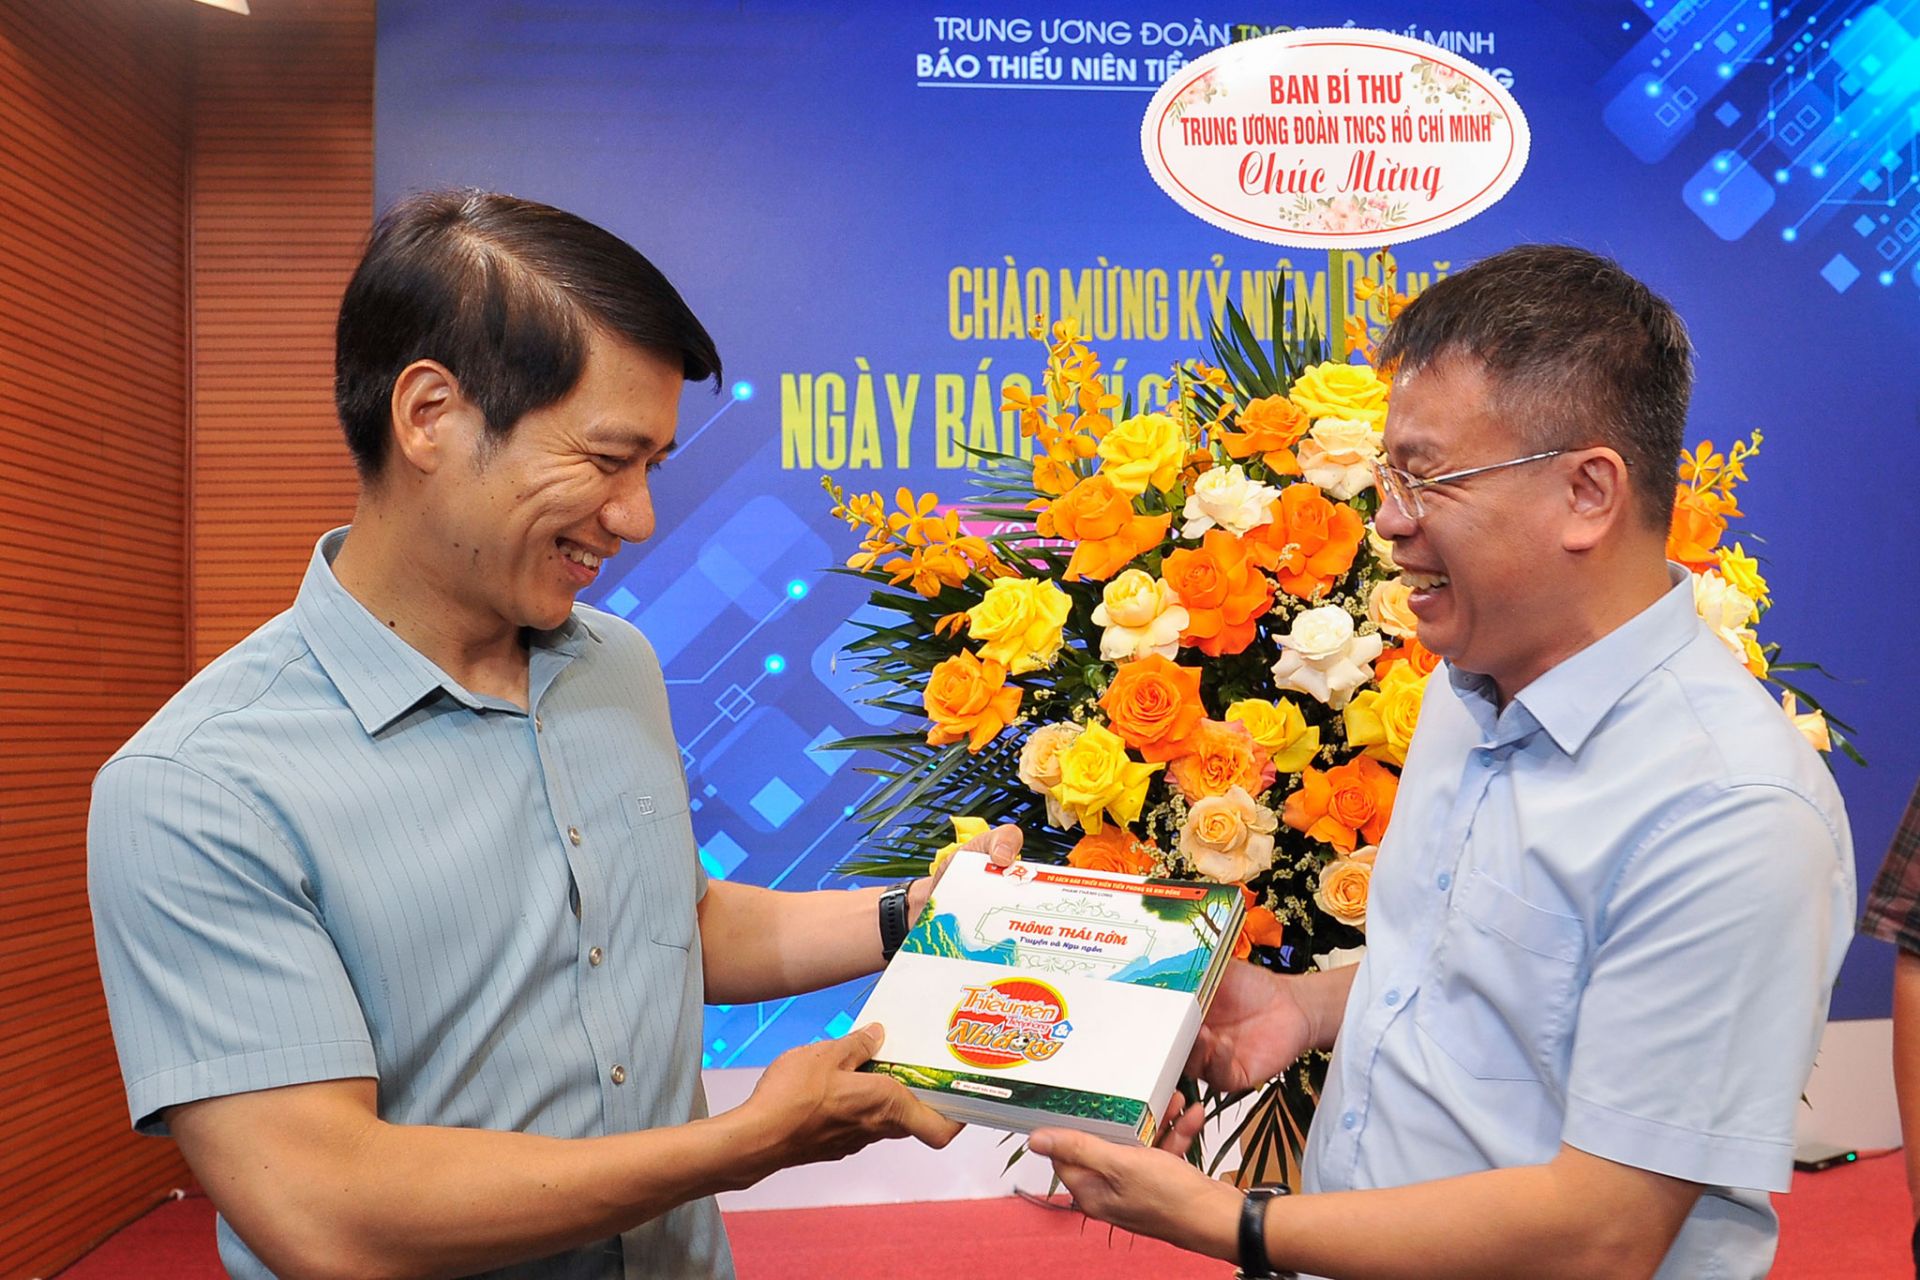 Nhà văn, nhà báo Nguyễn Phan Khuê (bên phải) trao tặng Bí thư thường trực T.Ư Đoàn Nguyễn Ngọc Lương bộ ấn phẩm đặc biệt Kỷ niệm 70 năm thành lập Báo TNTP&NĐ.